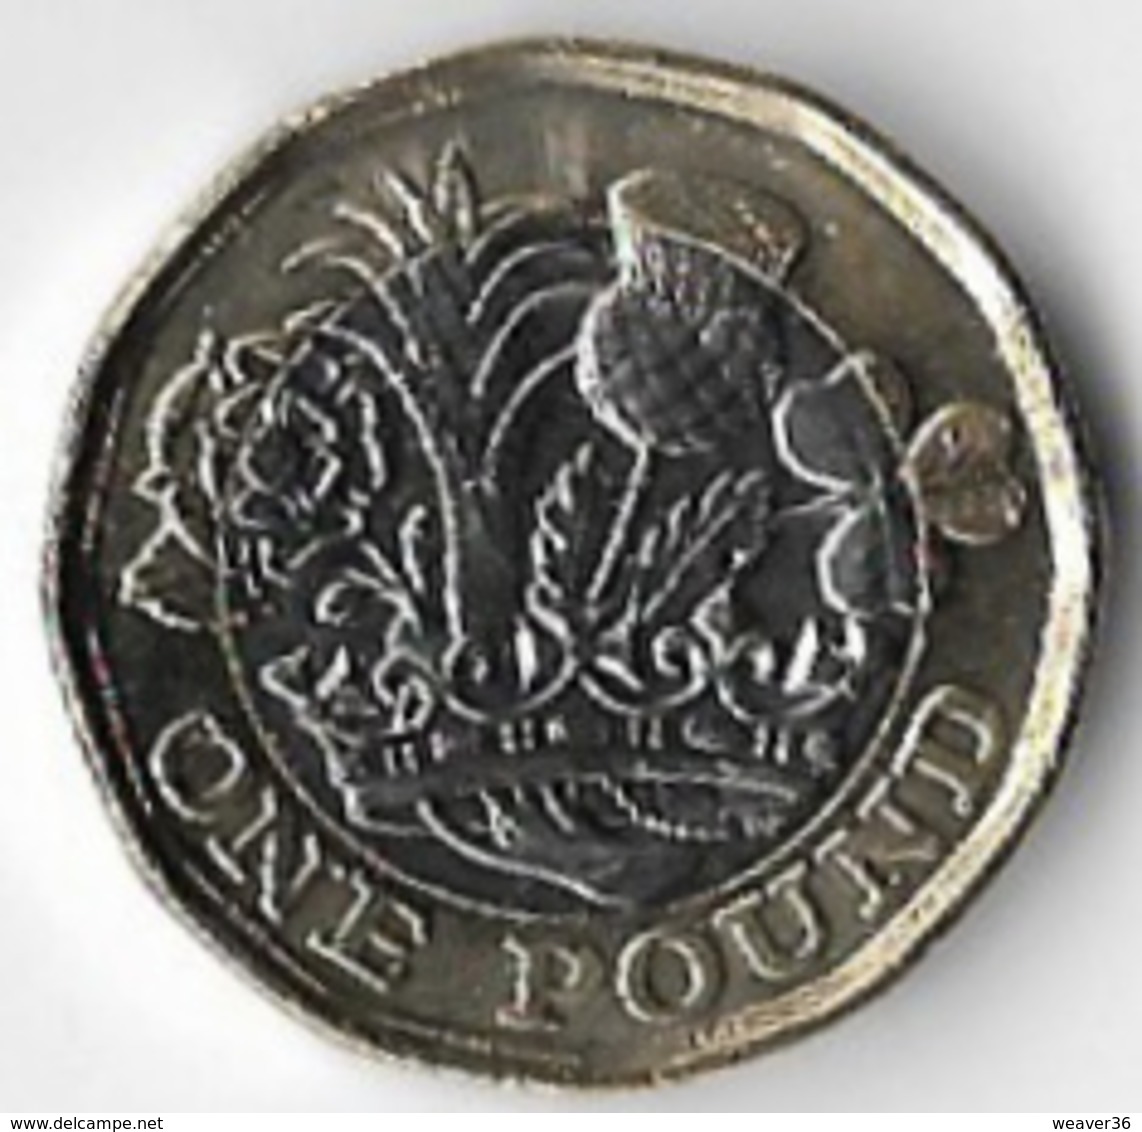 United Kingdom 2019 [C836/2D] - 50 Pence